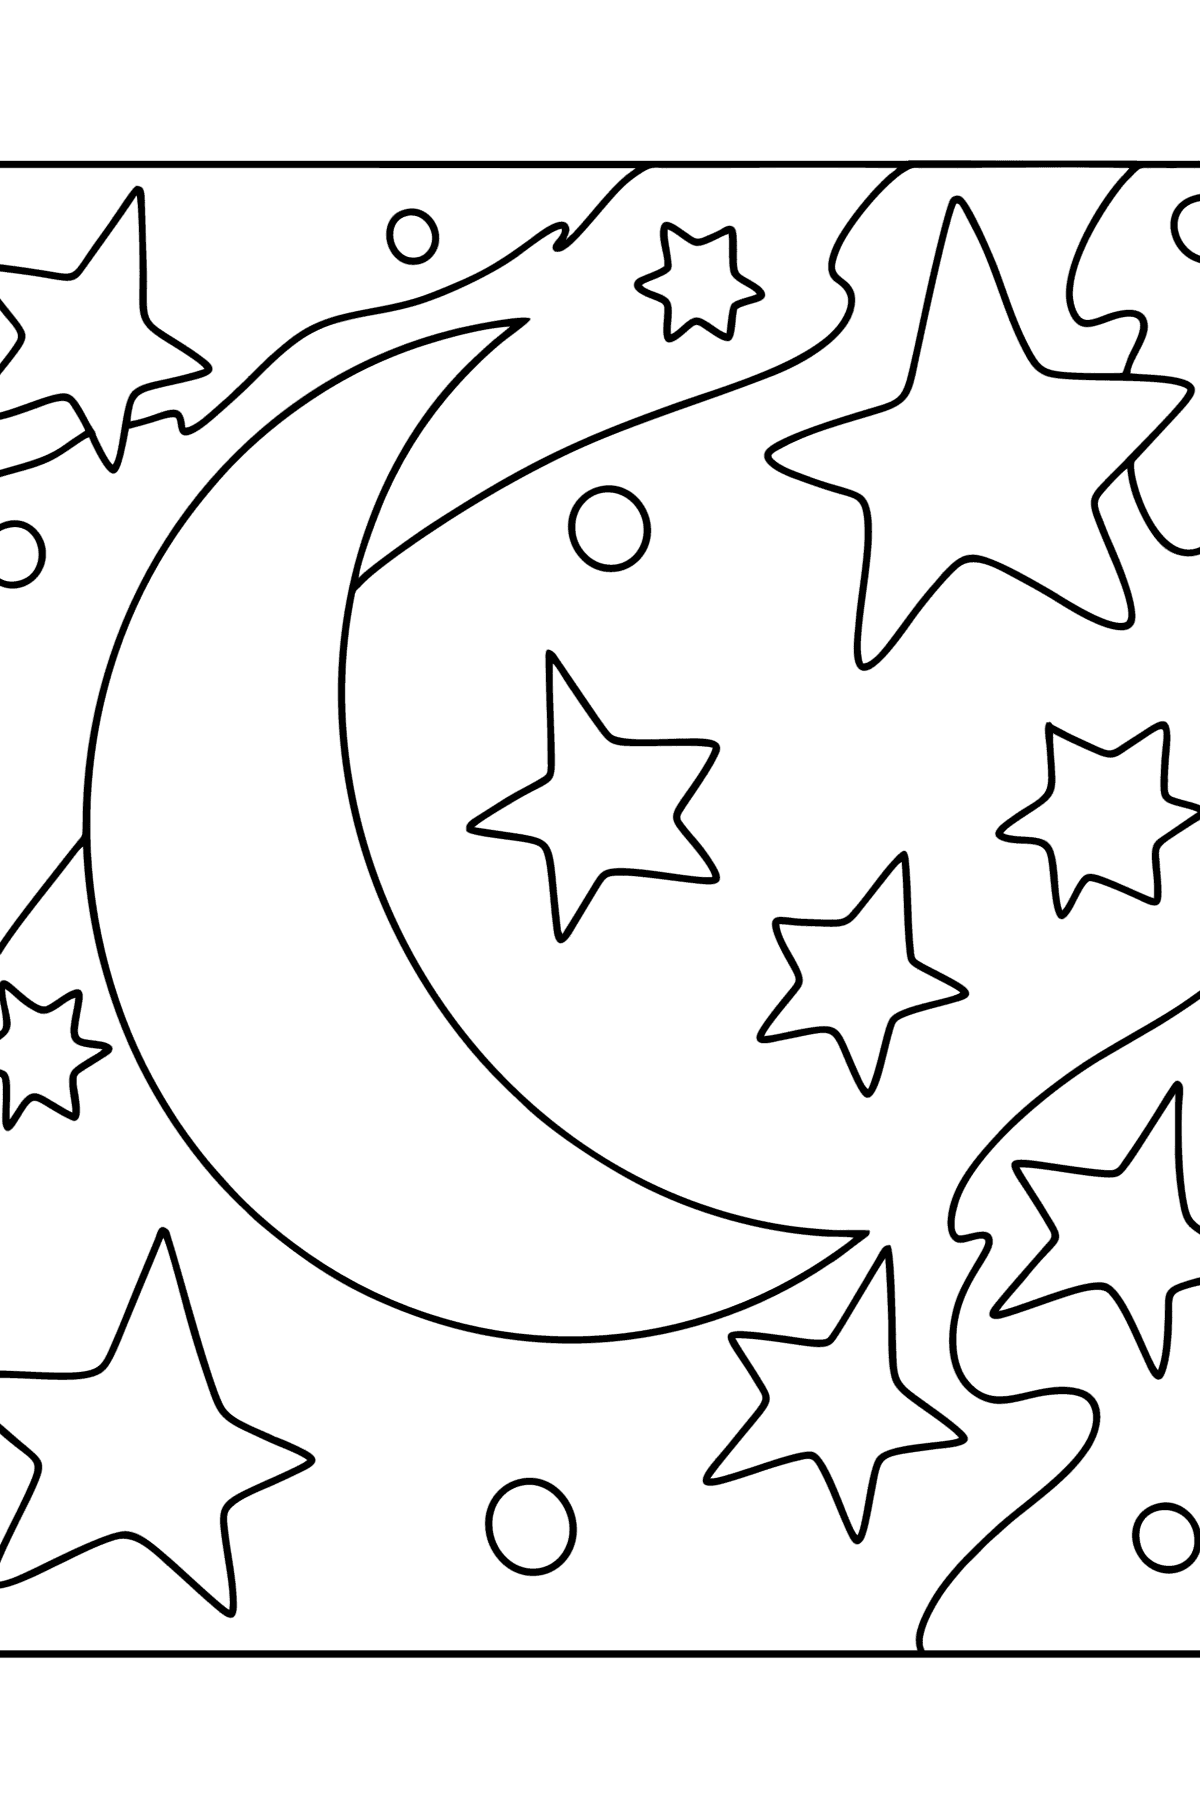 Månen og stjernerne tegning til farvning - Tegninger til farvelægning for børn